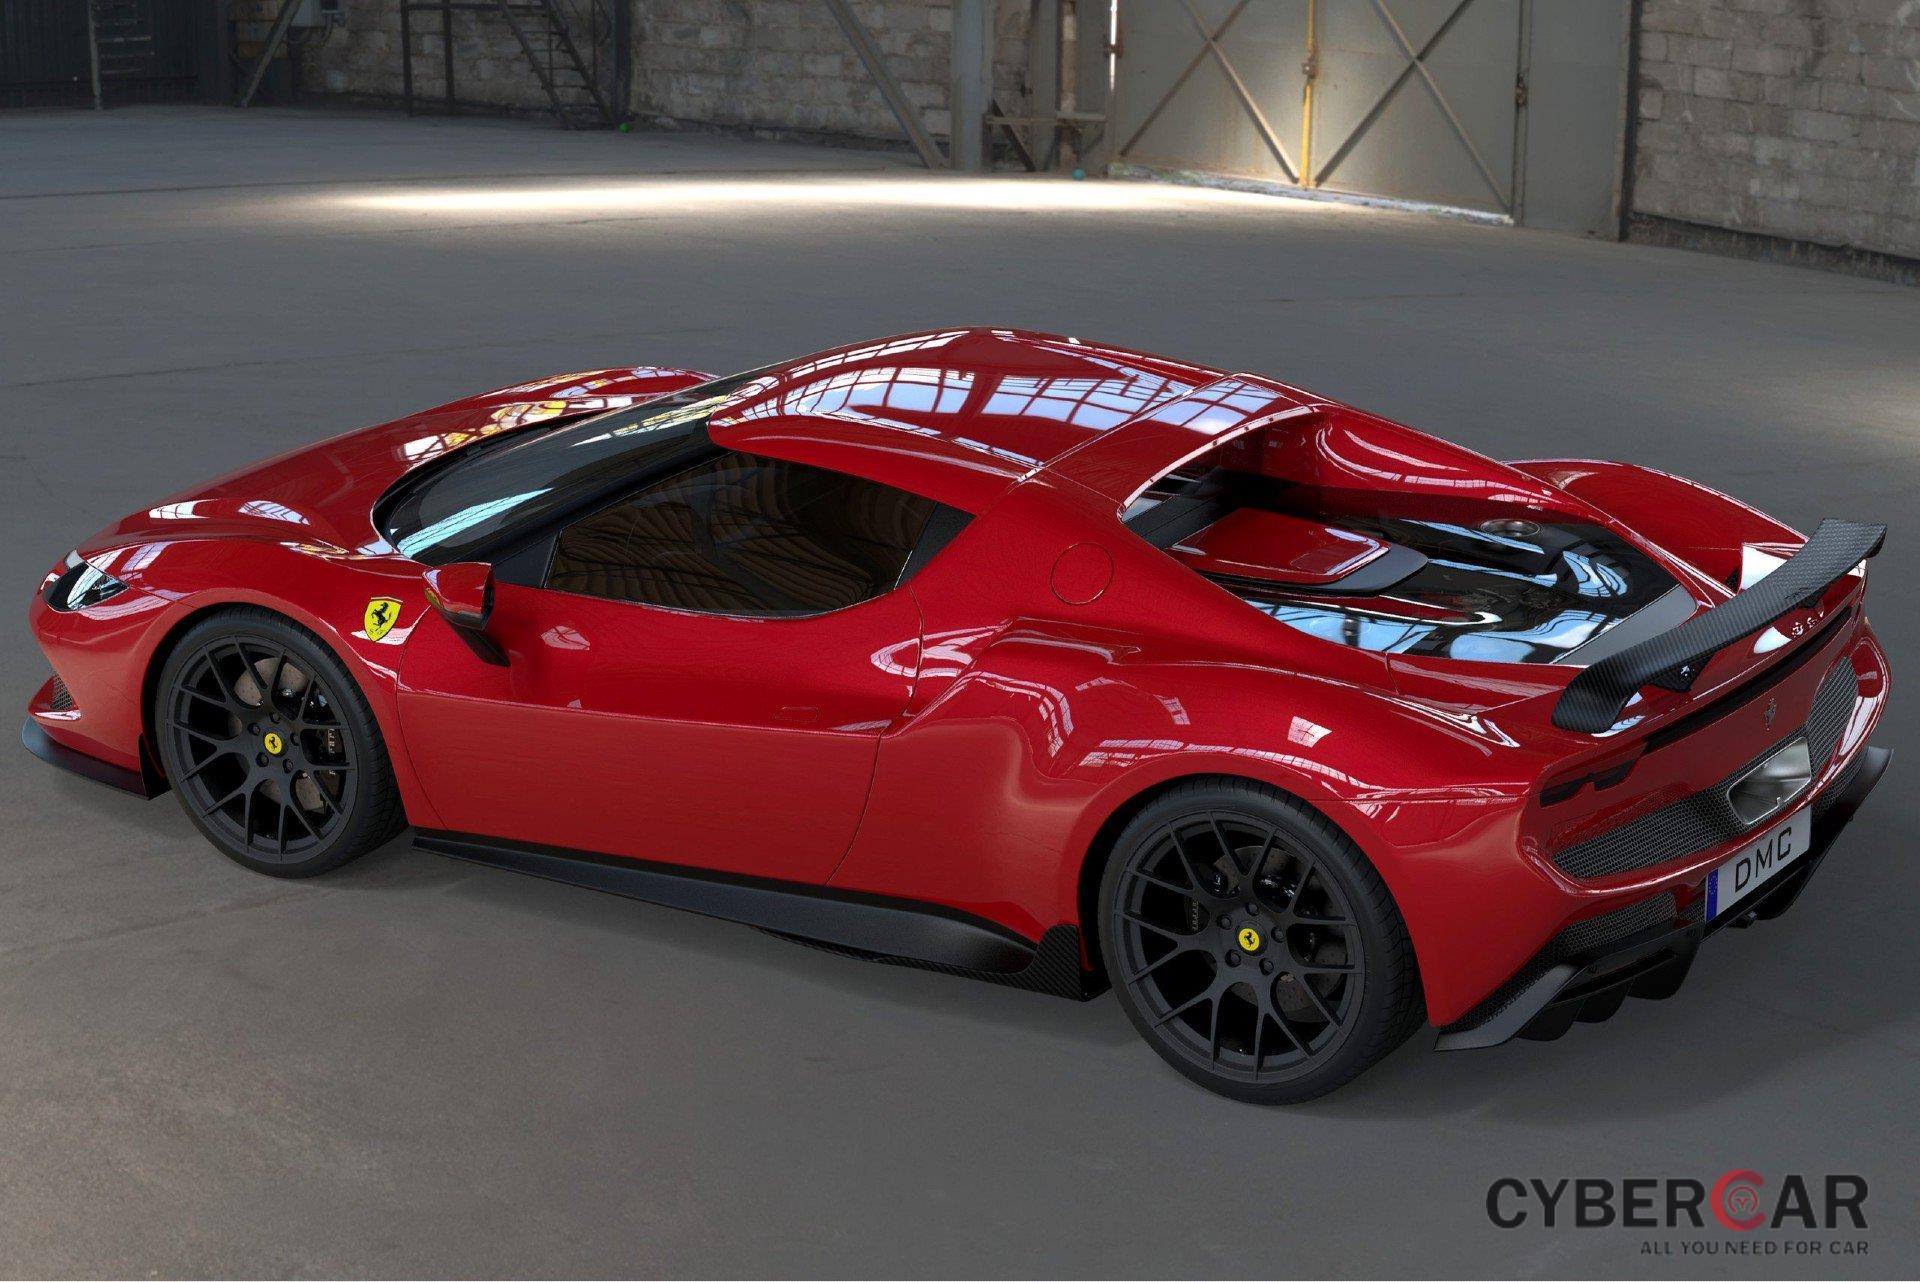 Ferrari 296 GTB voi goi do nang cap suc manh anh 2